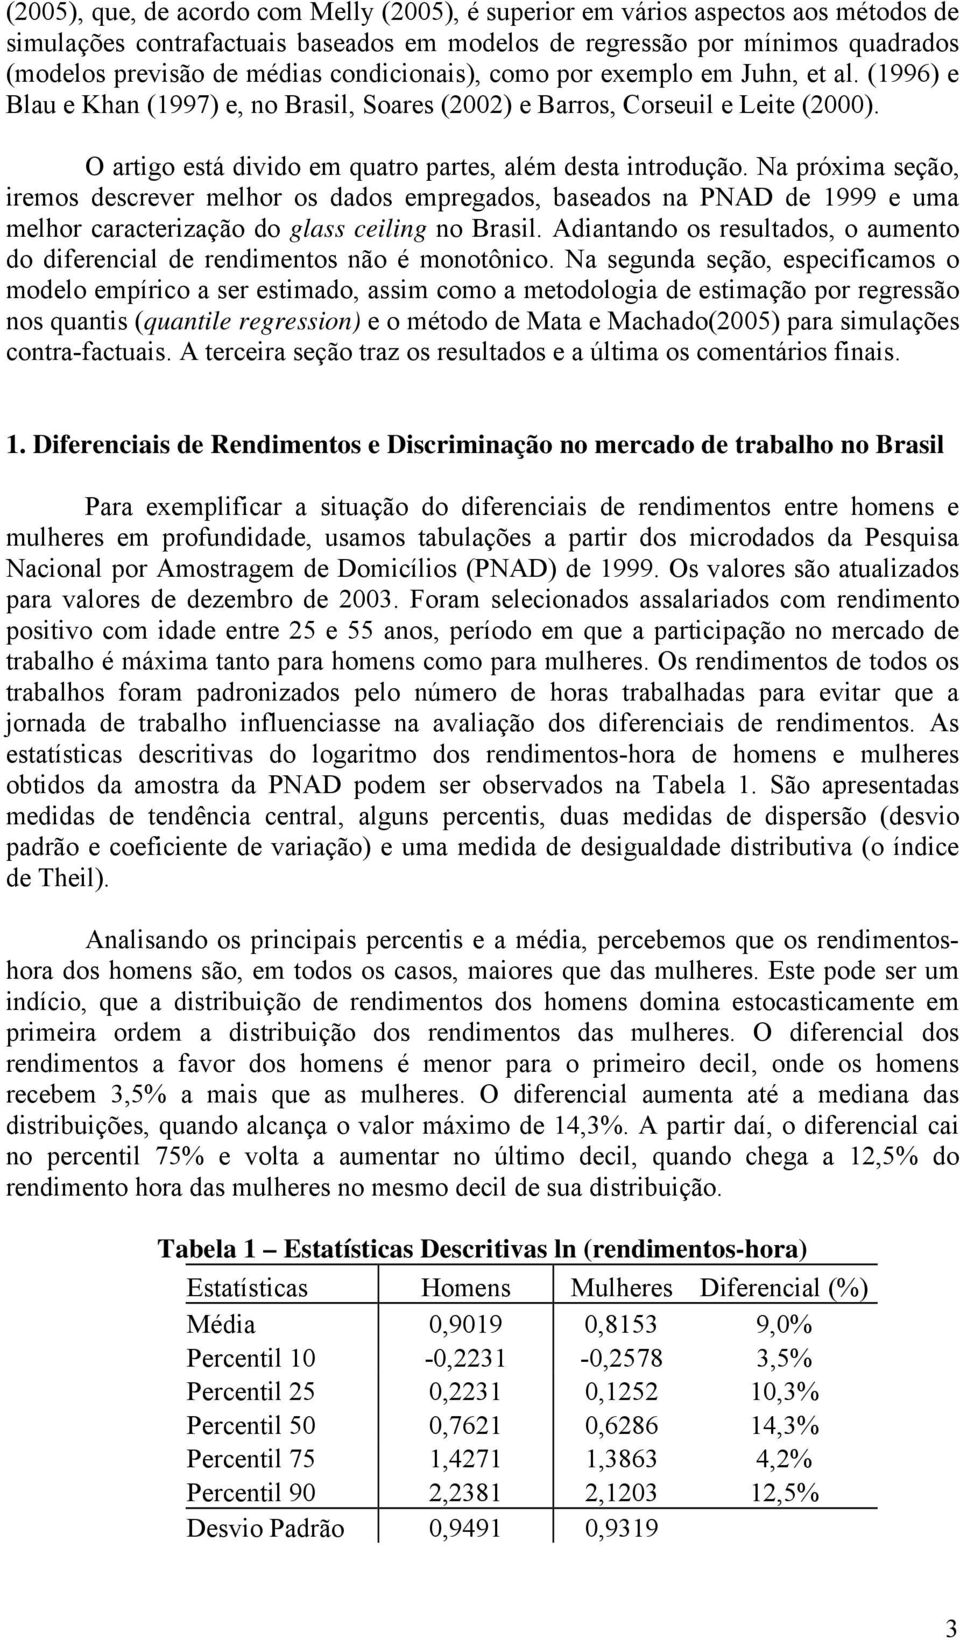 Na próxia seção, ireos descrever elhor os dados epregados, baseados na PNAD de 1999 e ua elhor caracterização do glass ceiling no Brasil.